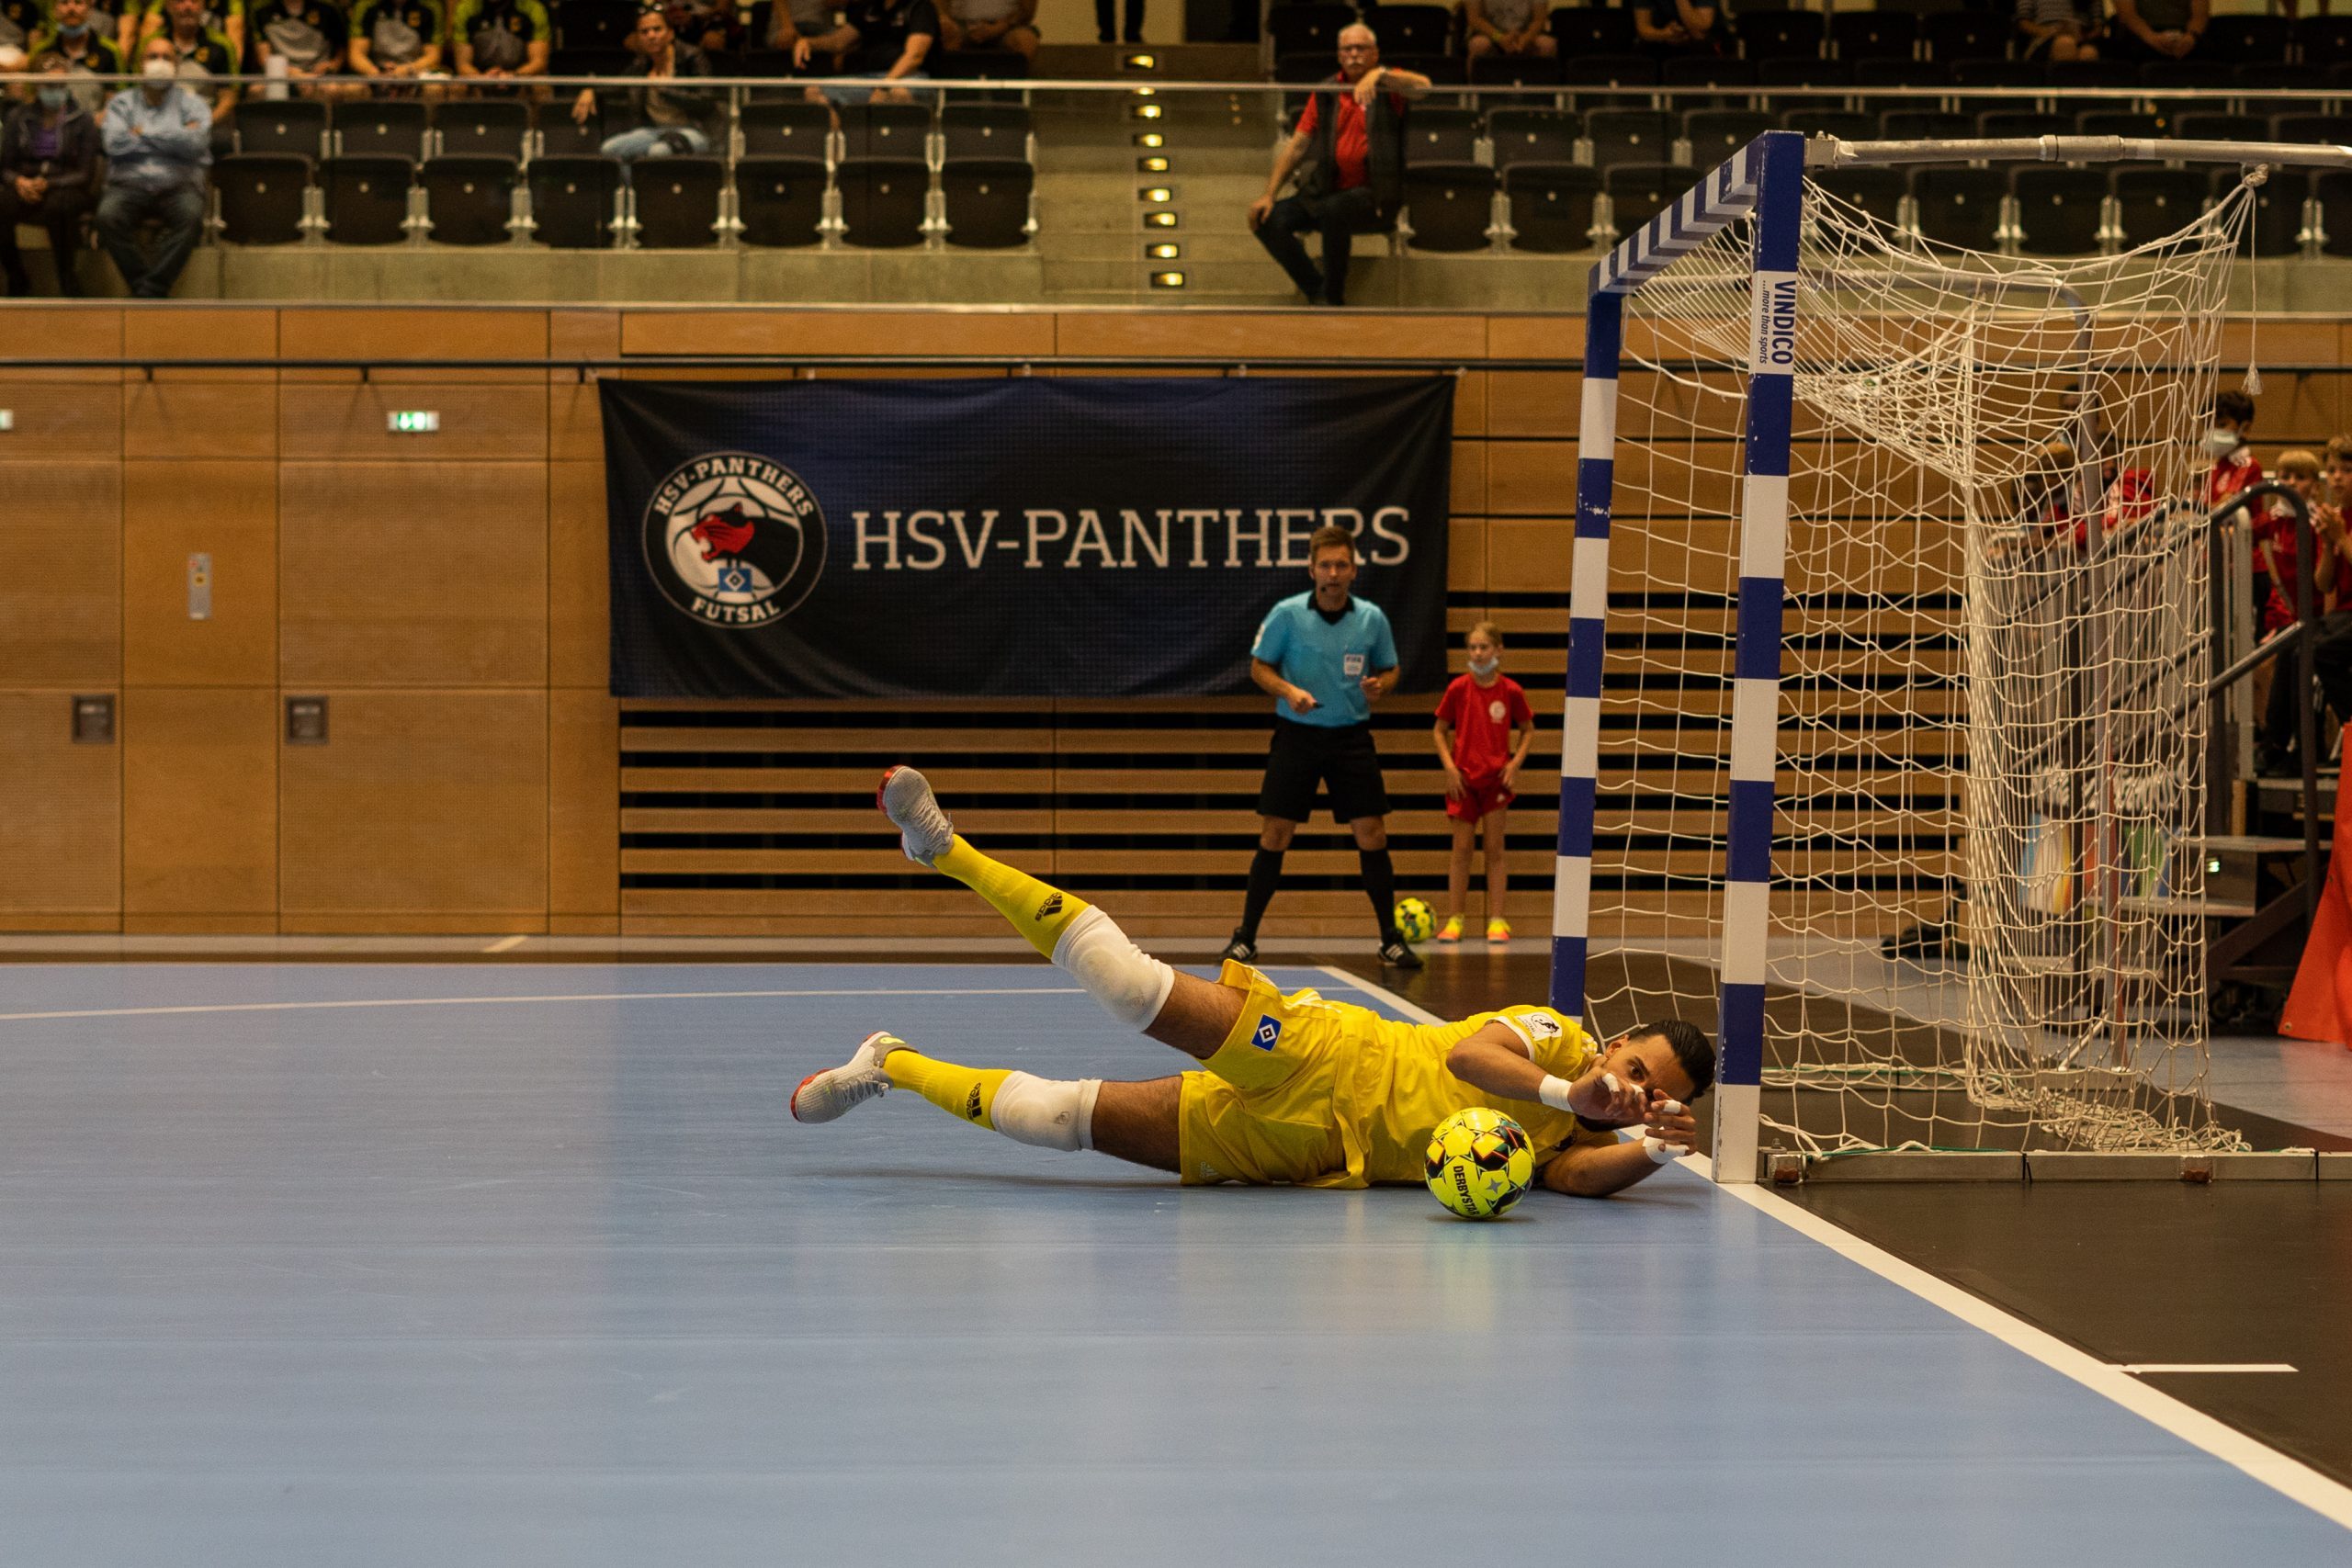 DSC03091 1 scaled - Die Futsal-Bundesliga geht in die Playoffs | Eine spannende Premierensaison im Überblick